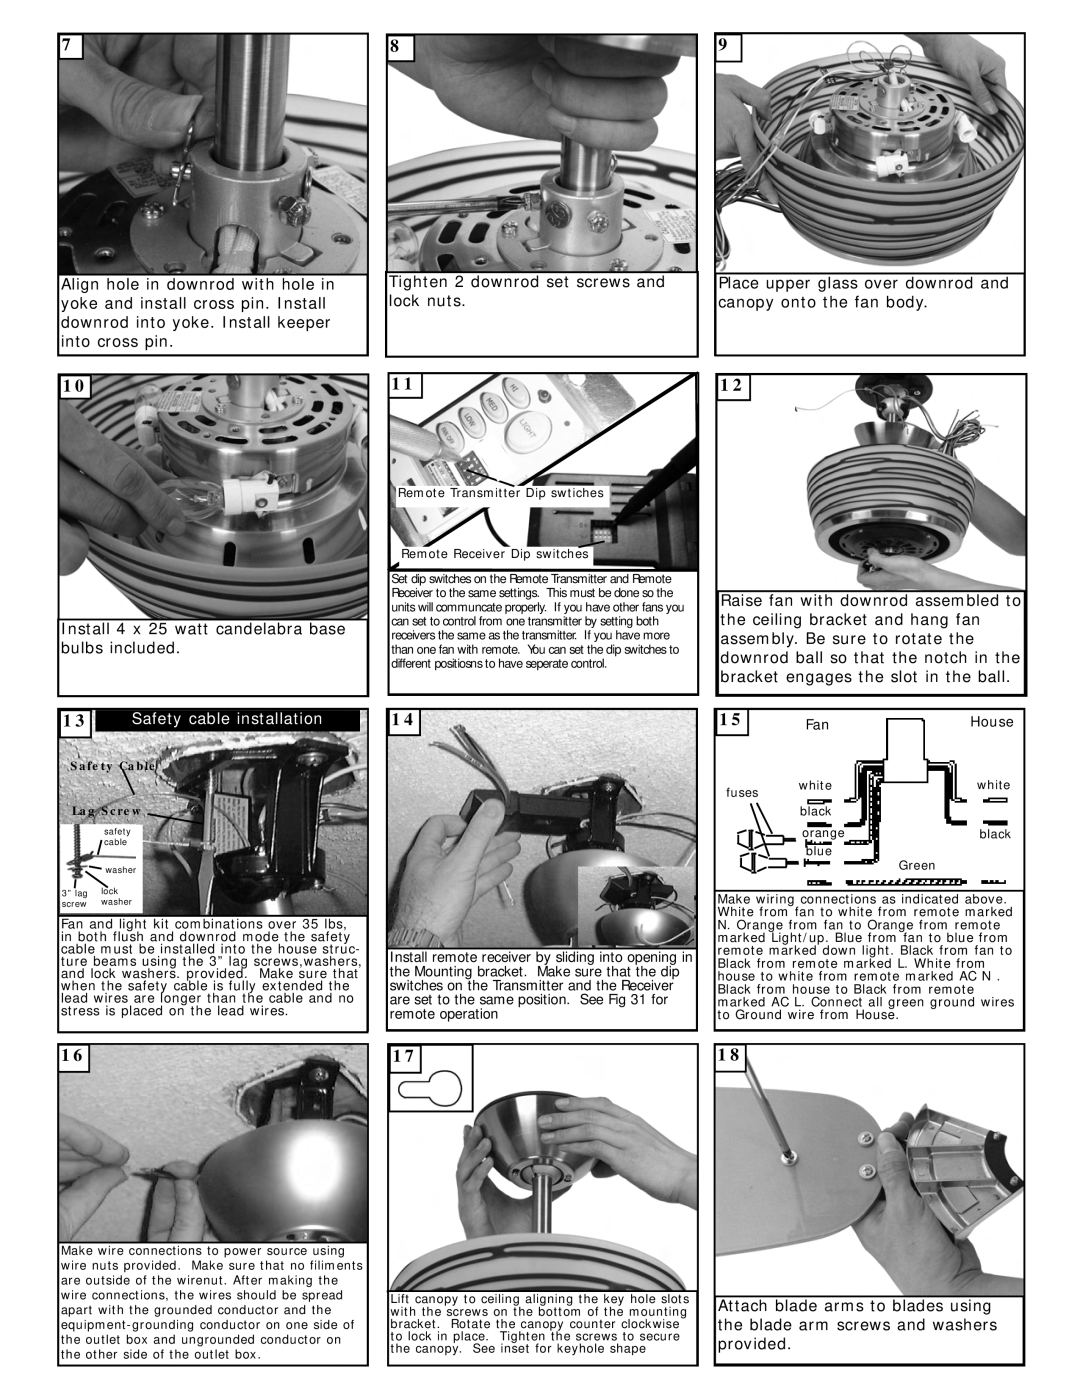 Monte Carlo Fan Company 5LOR52BSD owner manual Install 4 x 25 watt candelabra base bulbs included 